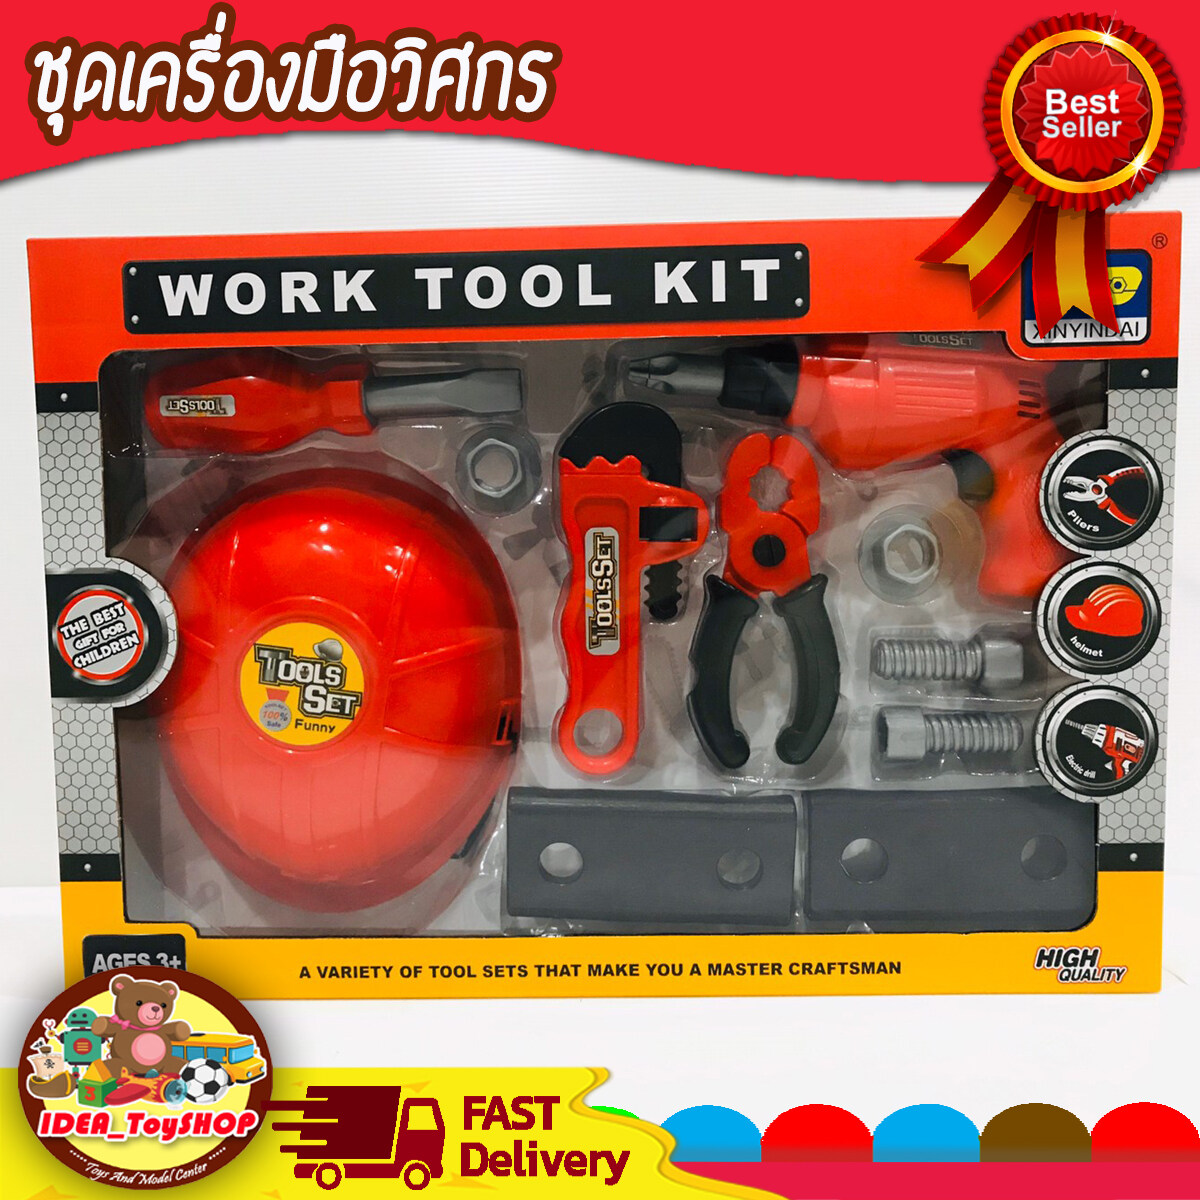 ของเล่น เครื่องมือช่าง ชุดเครื่องมือช่าง ชุดเครื่องมือวิศวกร ชุดจำลองอุปกรณ์ช่าง ของเล่นเด็ก Toys สร้างเสริมพัฒนาการเด็ก ของเล่นสำหรับเด็ก kidtoy